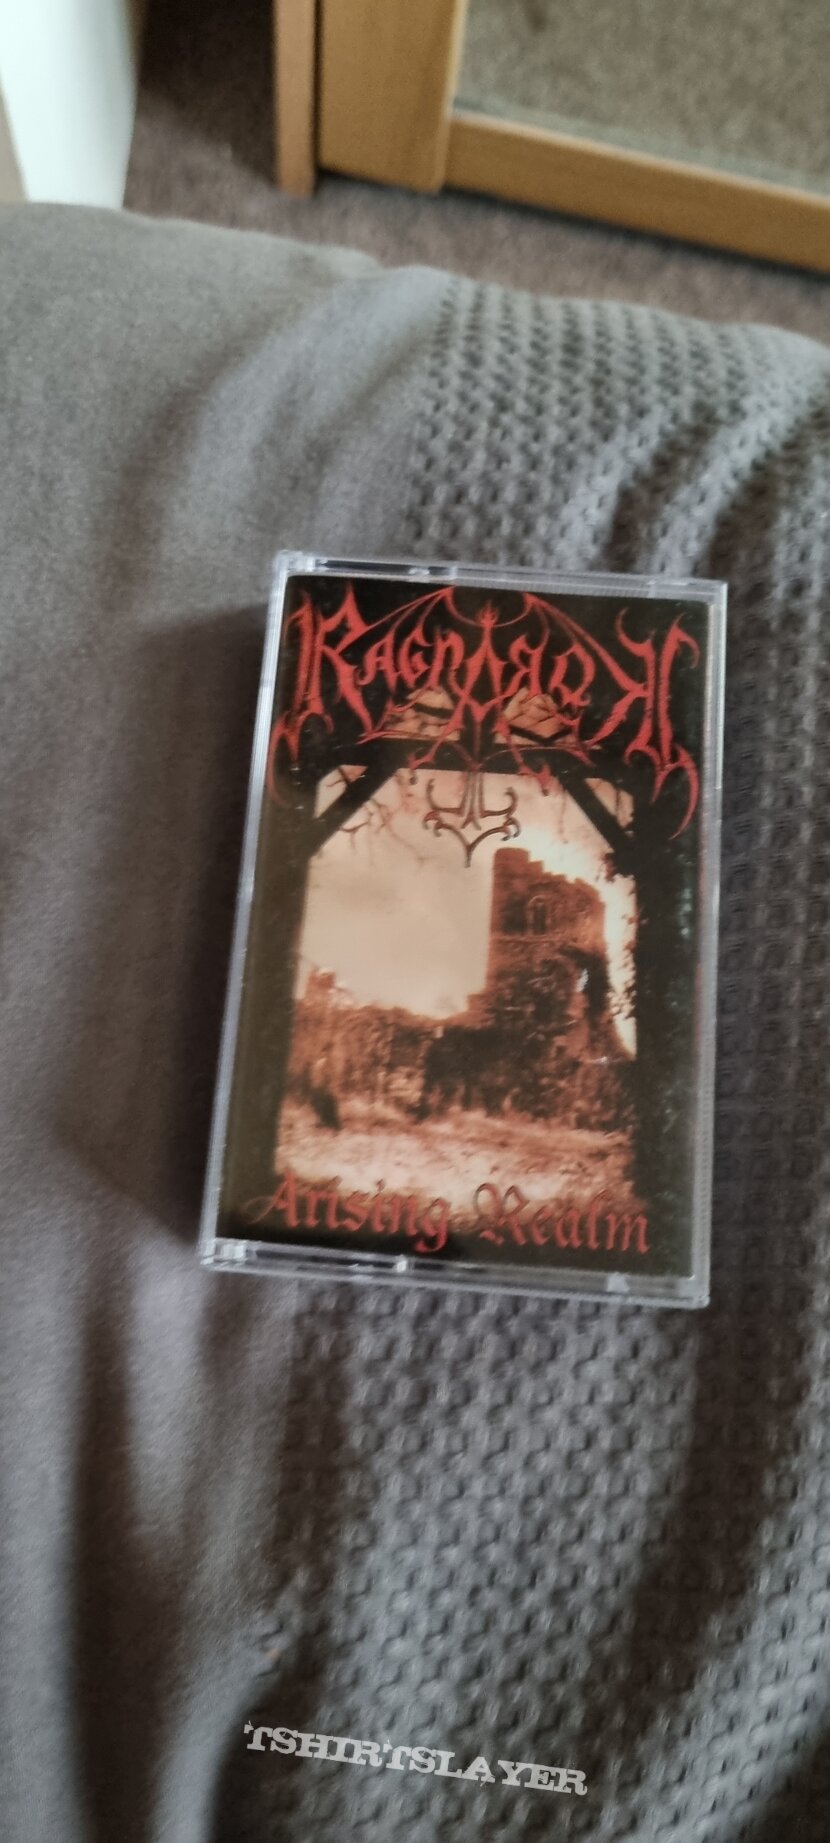 Ragnarok cassette 